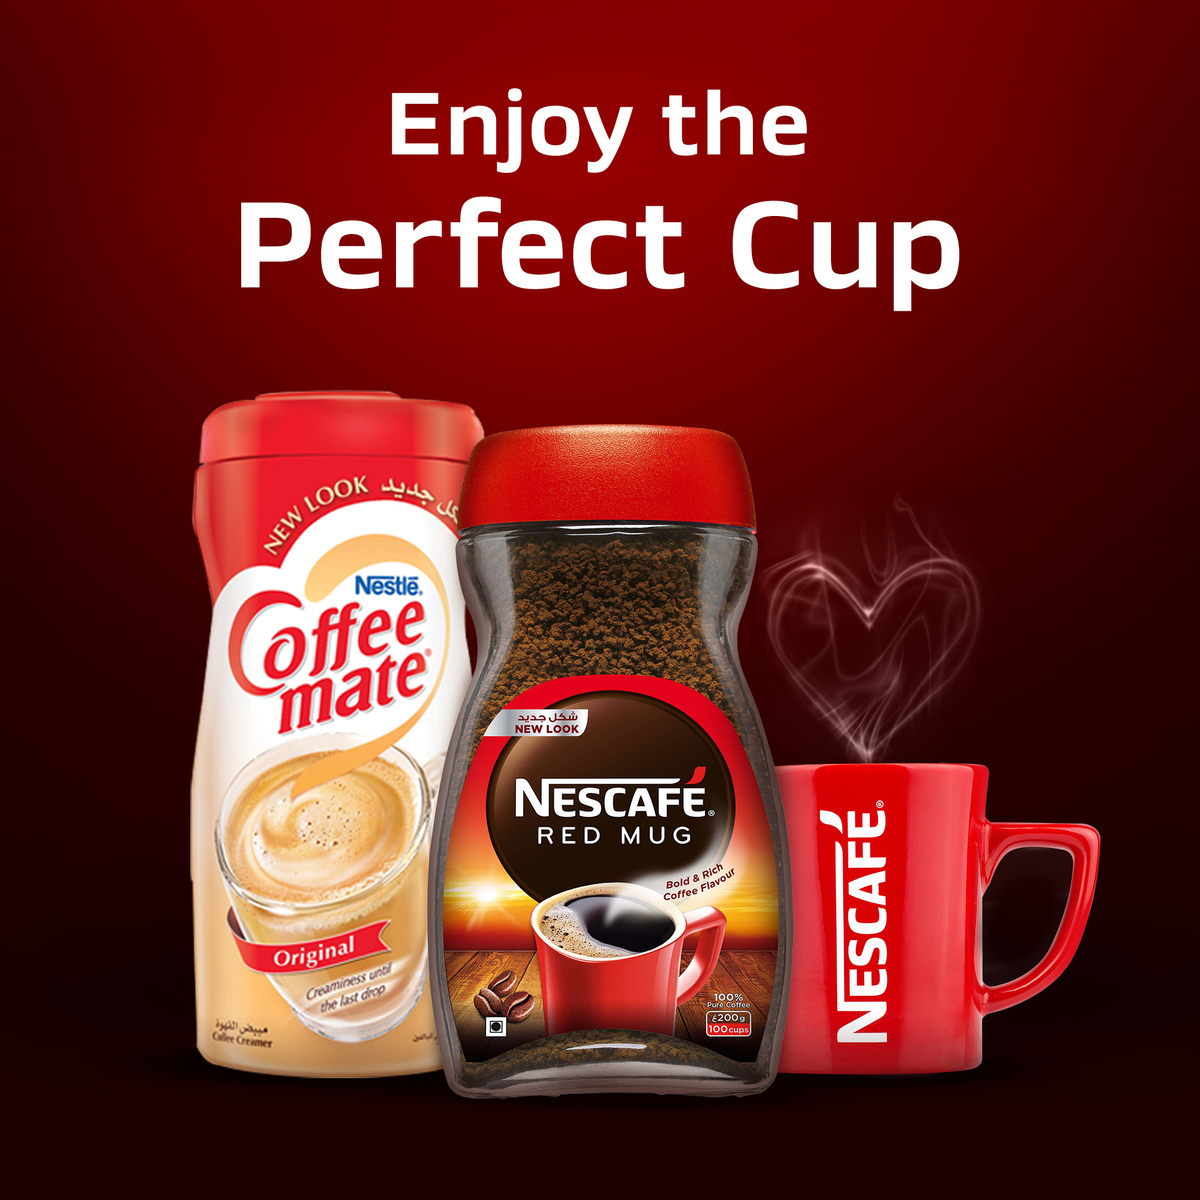 Nescafe Red Mug Instant Coffee 50 g